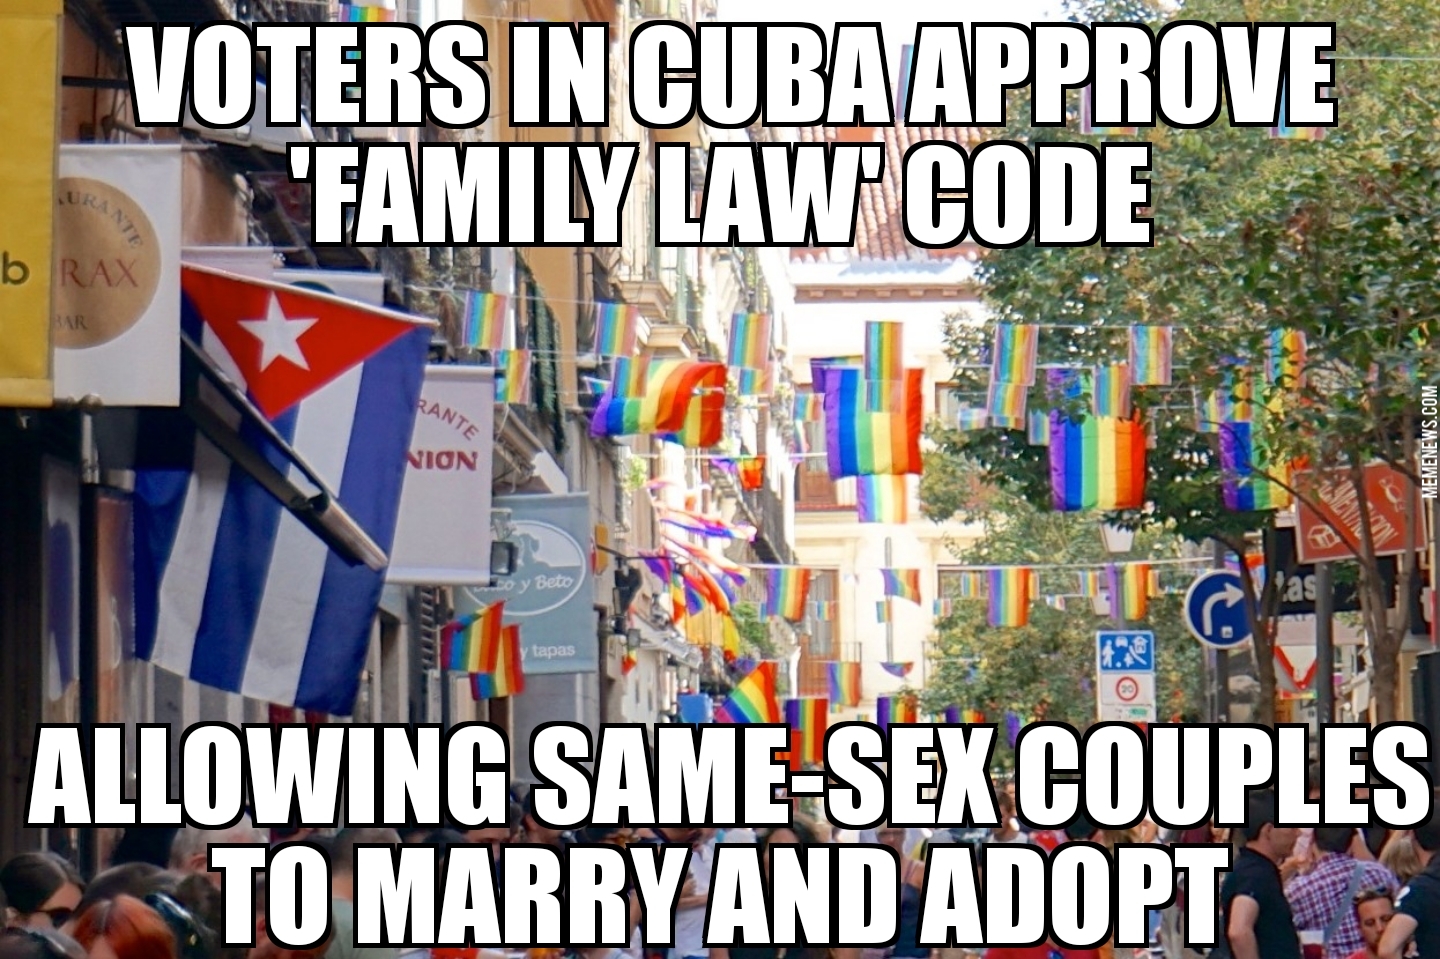 Cuba allows same-sex marriage